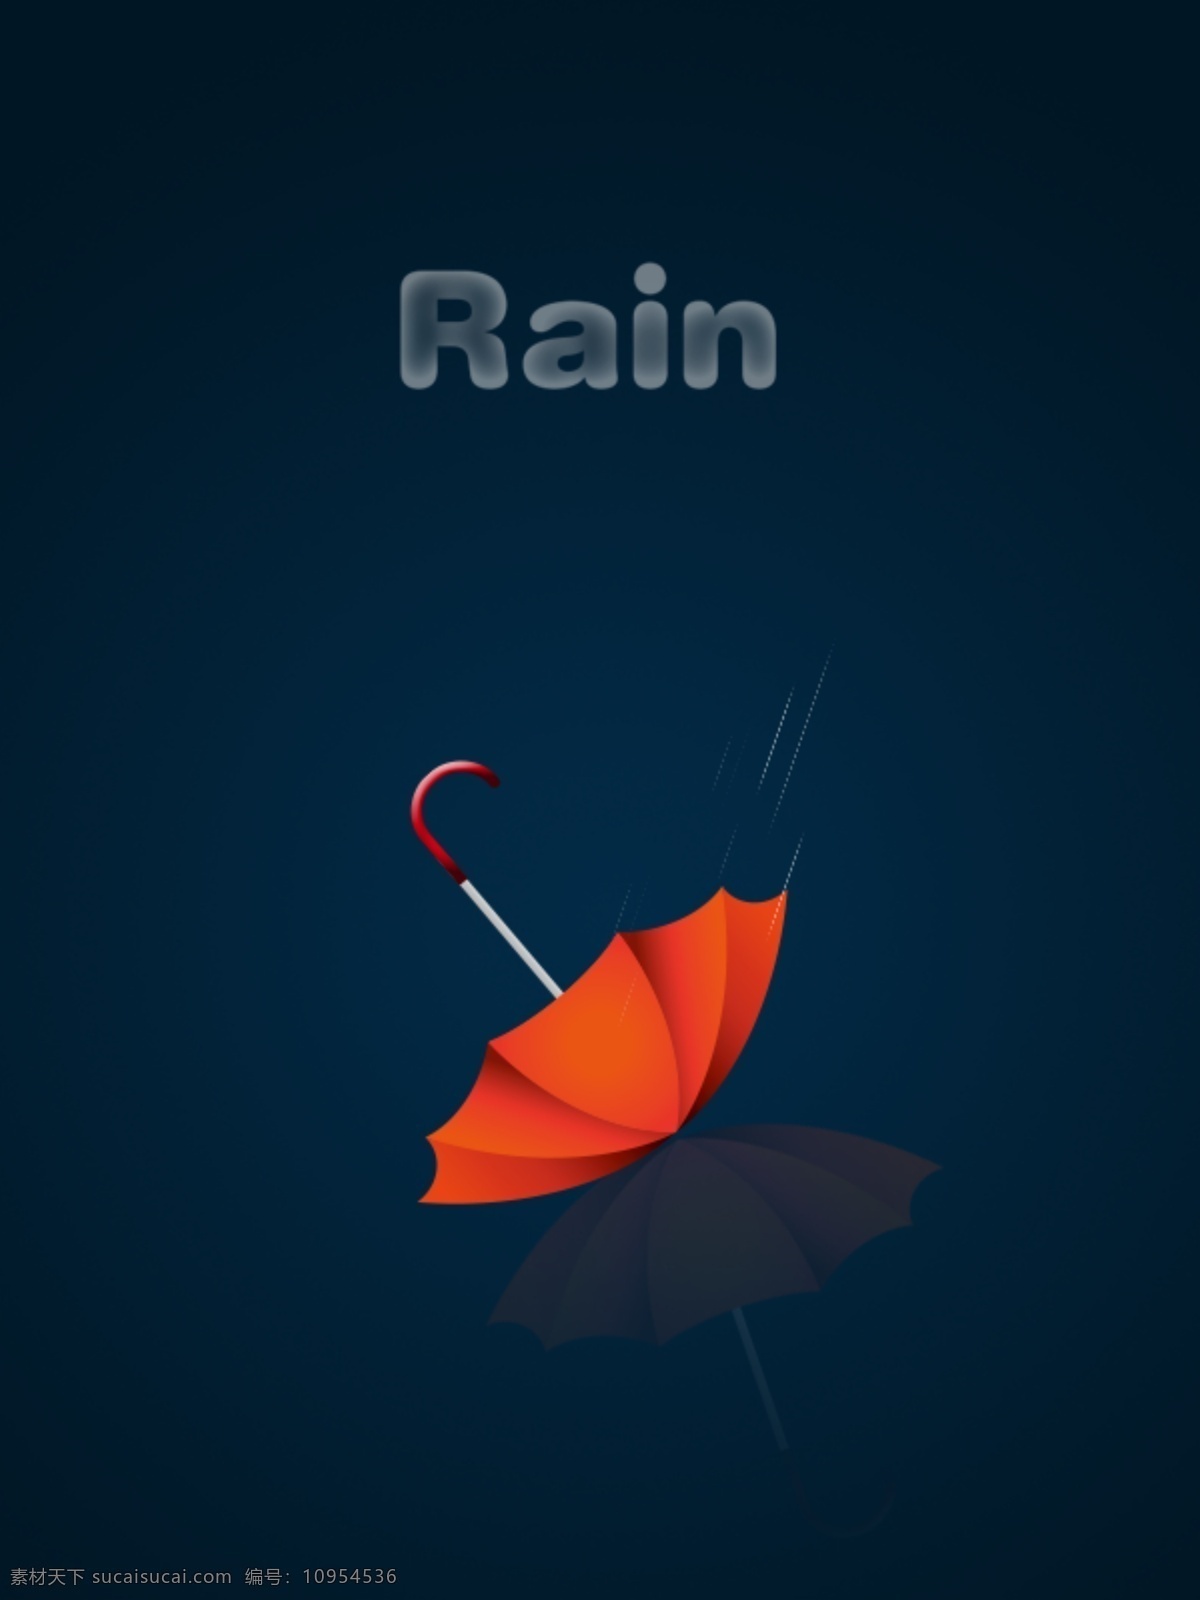 rain 倒影 雨滴 装饰画 红色雨伞 psd源文件